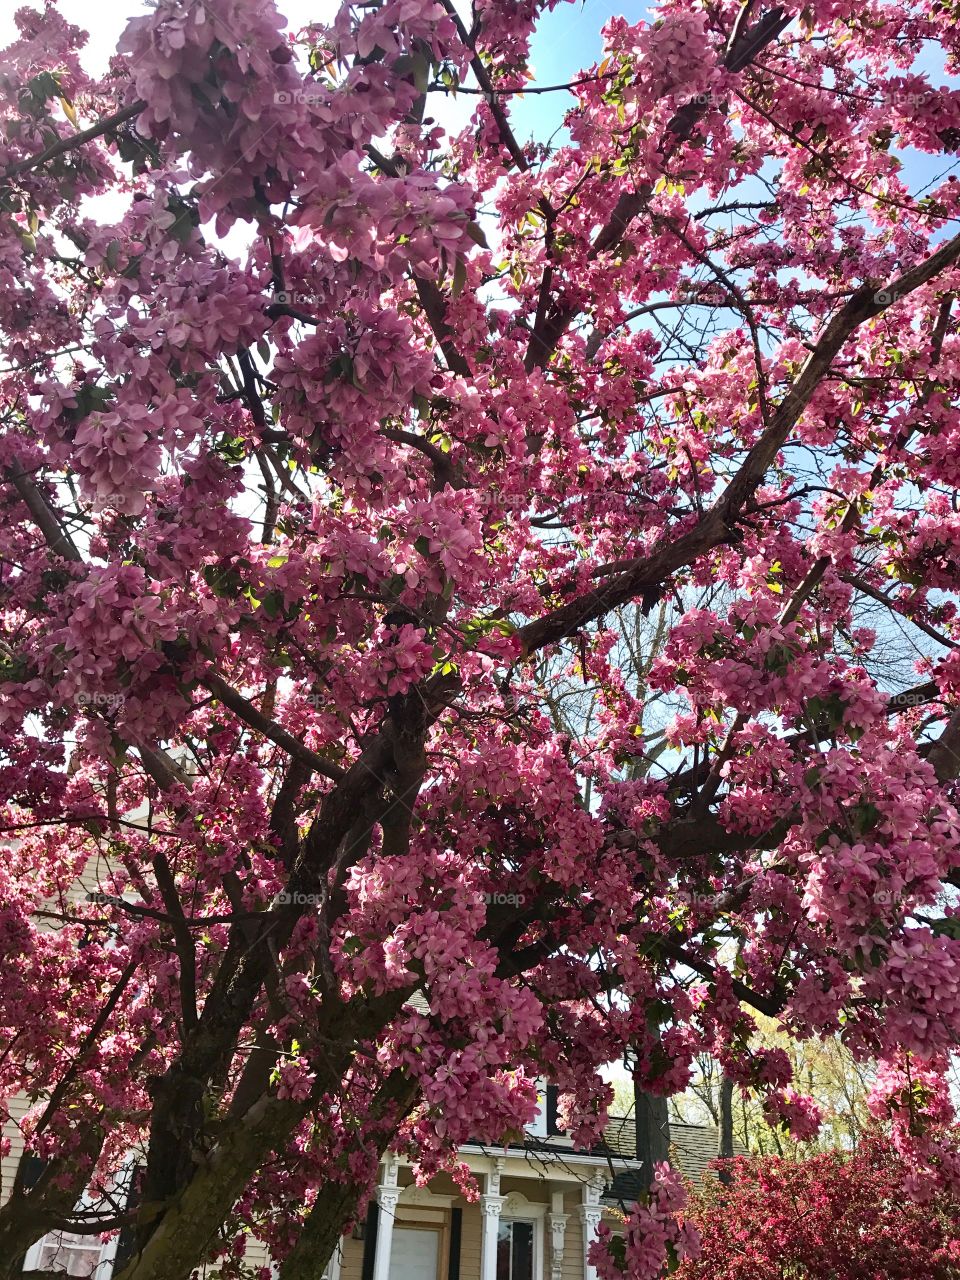 Pretty pink flowering tree